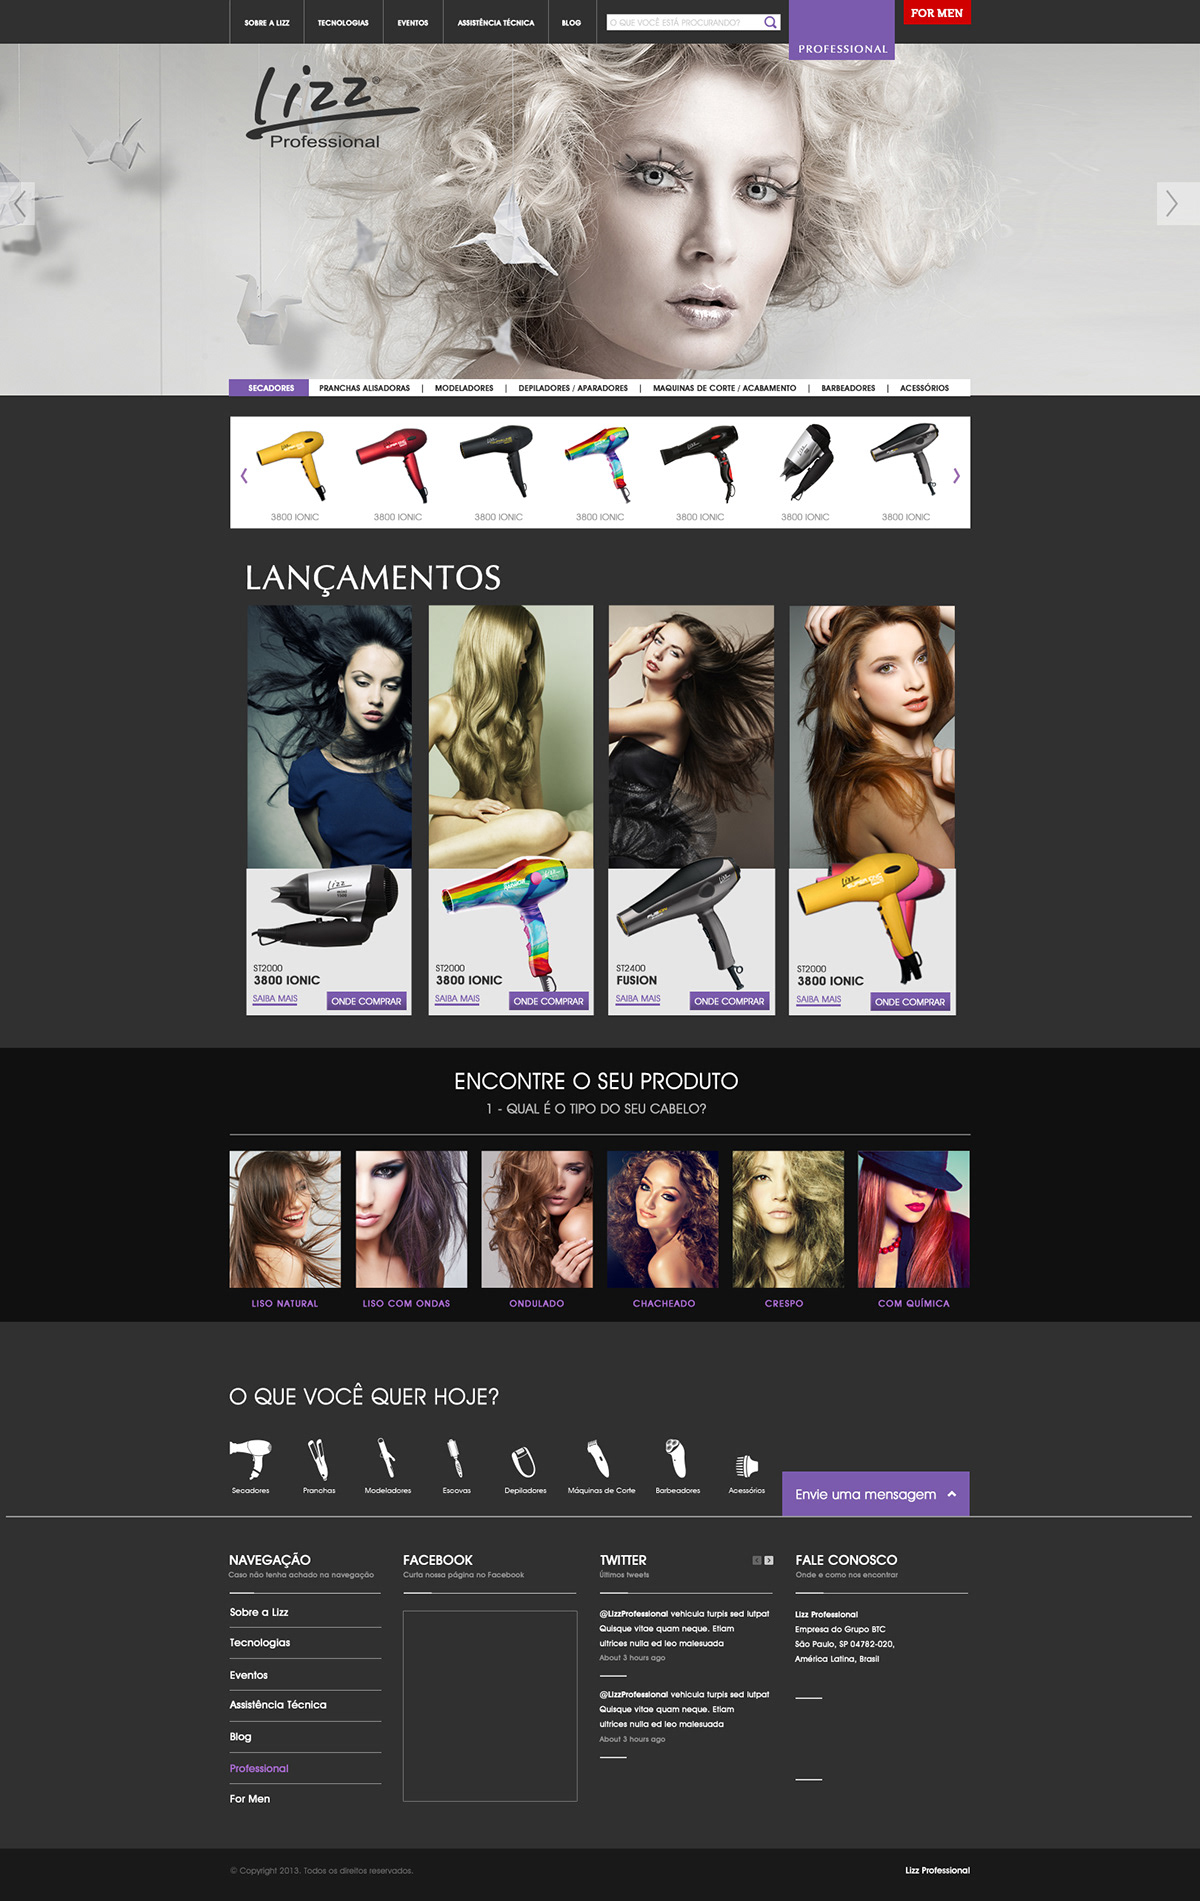 lizz site Web site de moda beleza lizz professional karina karina rodrigues design gráfico Karina designer secodores chapinhas site de secadores colors moda